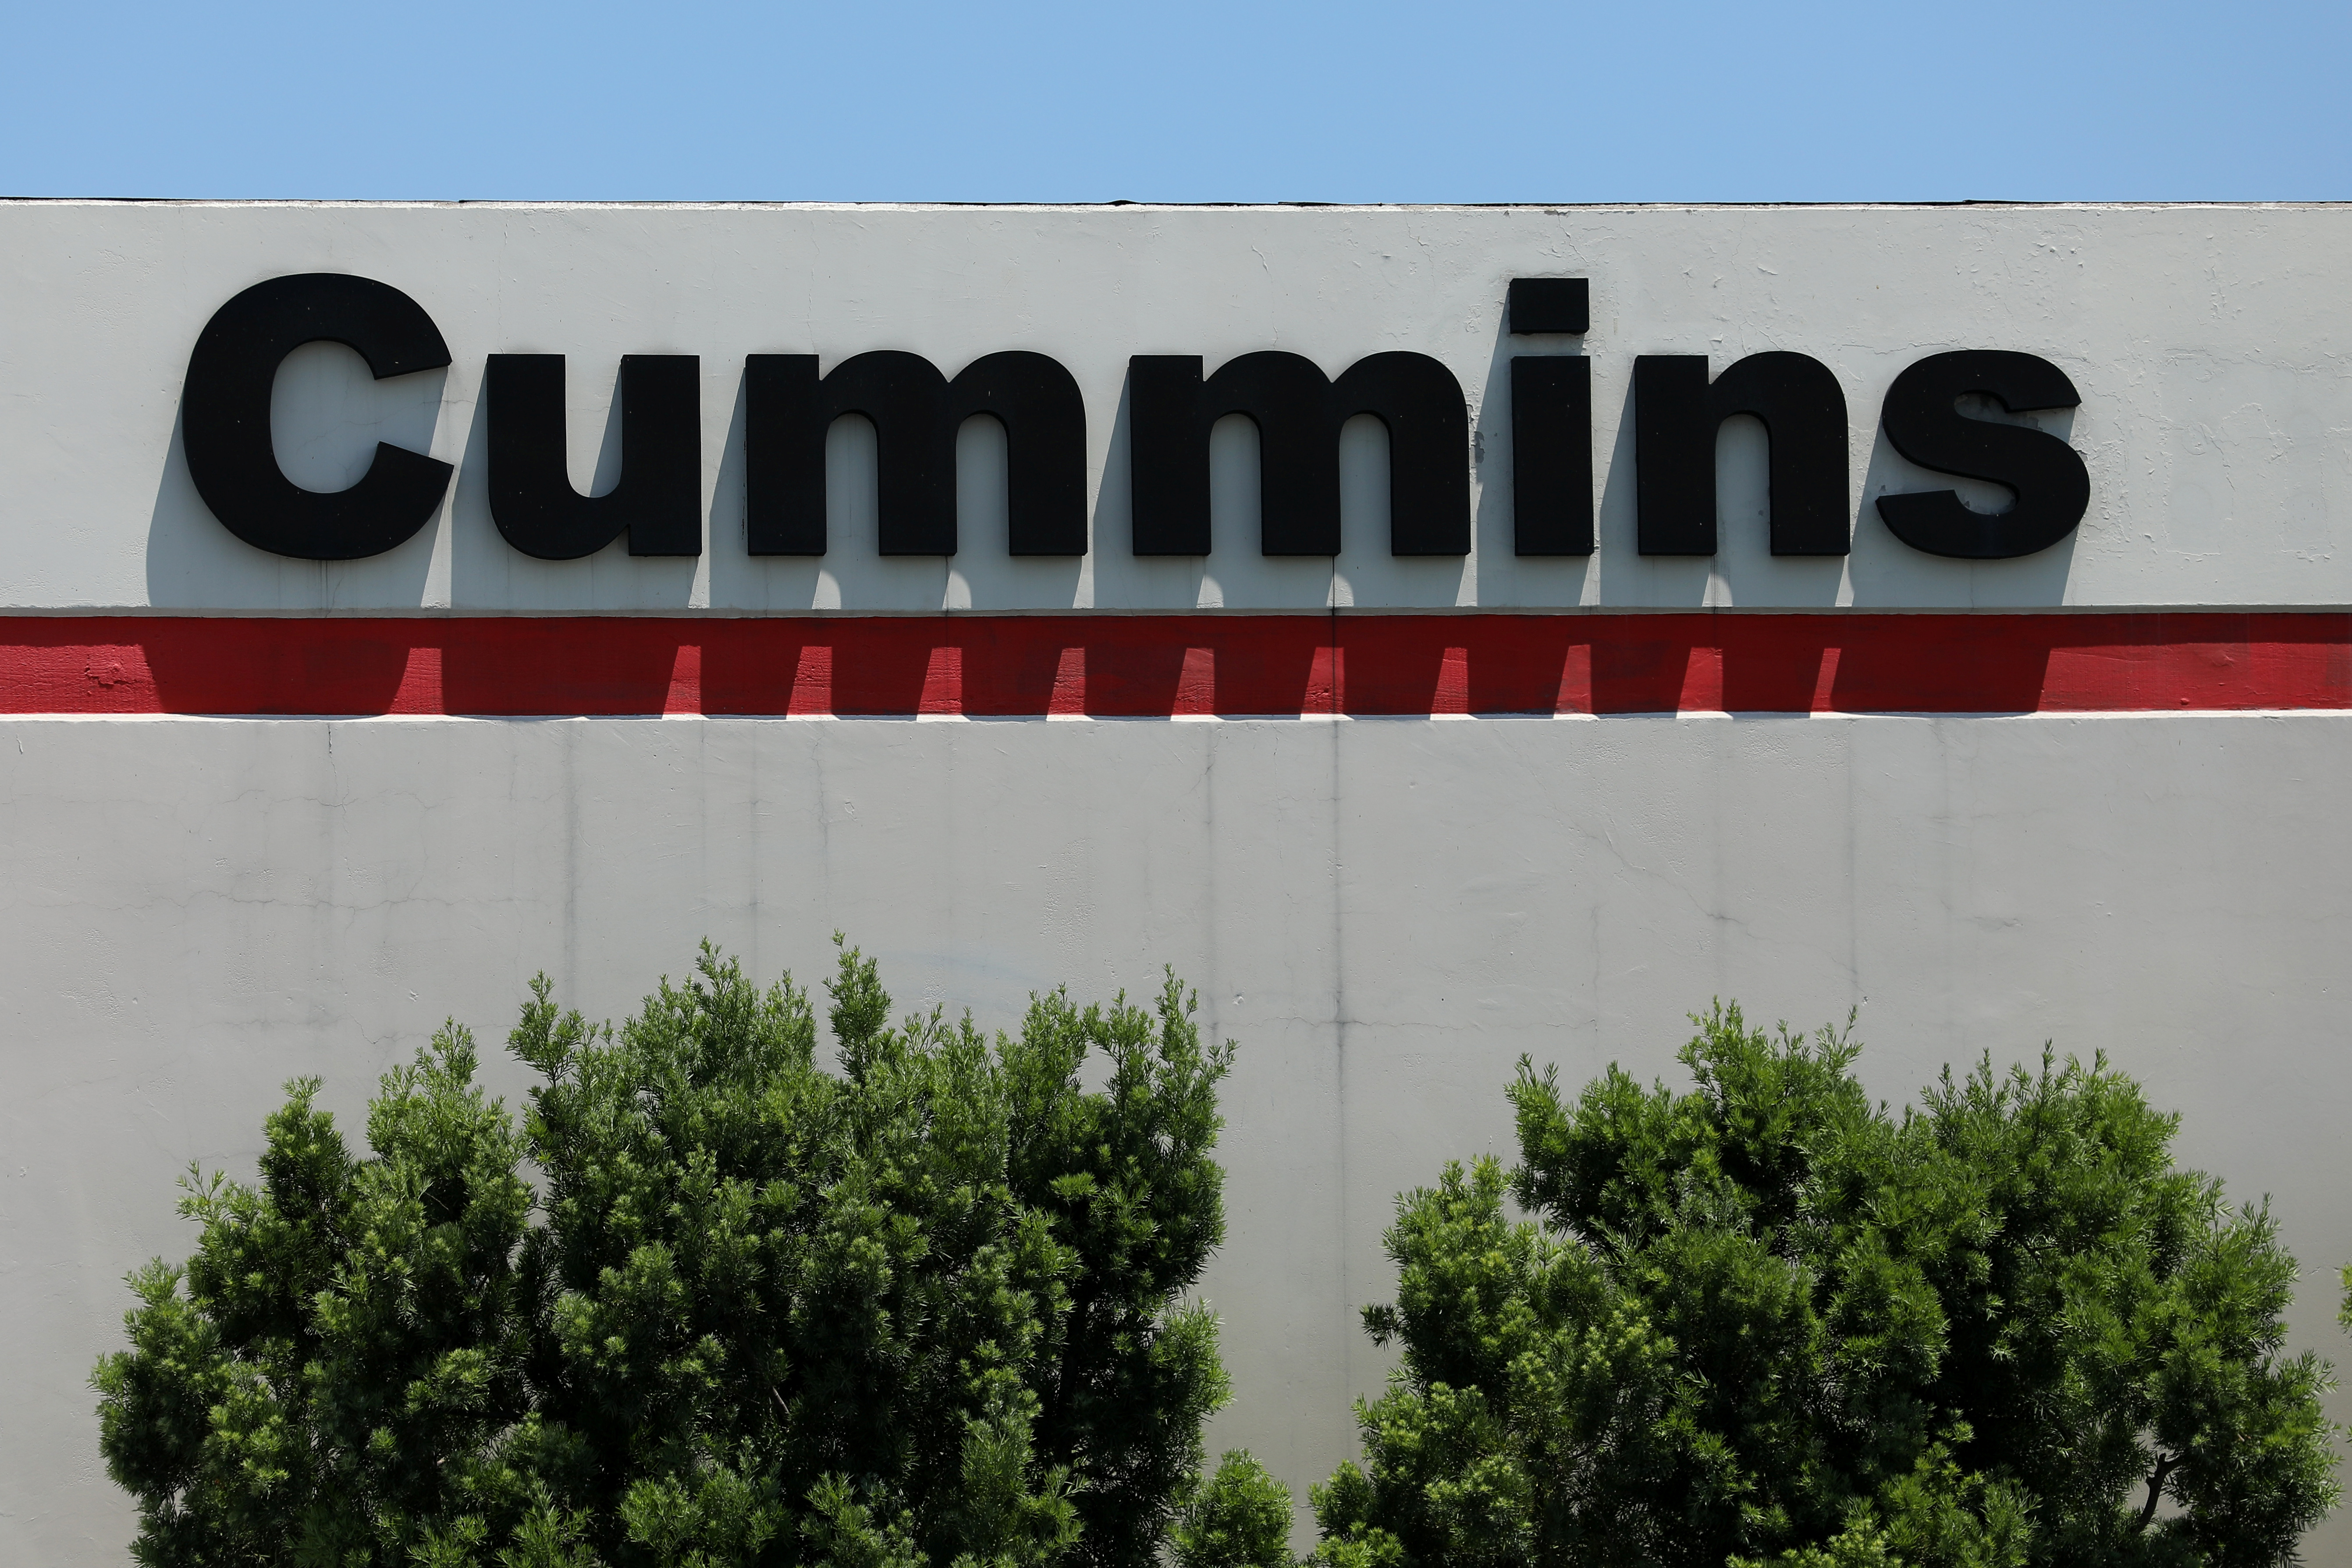 Cummins building shown in Irvine, California